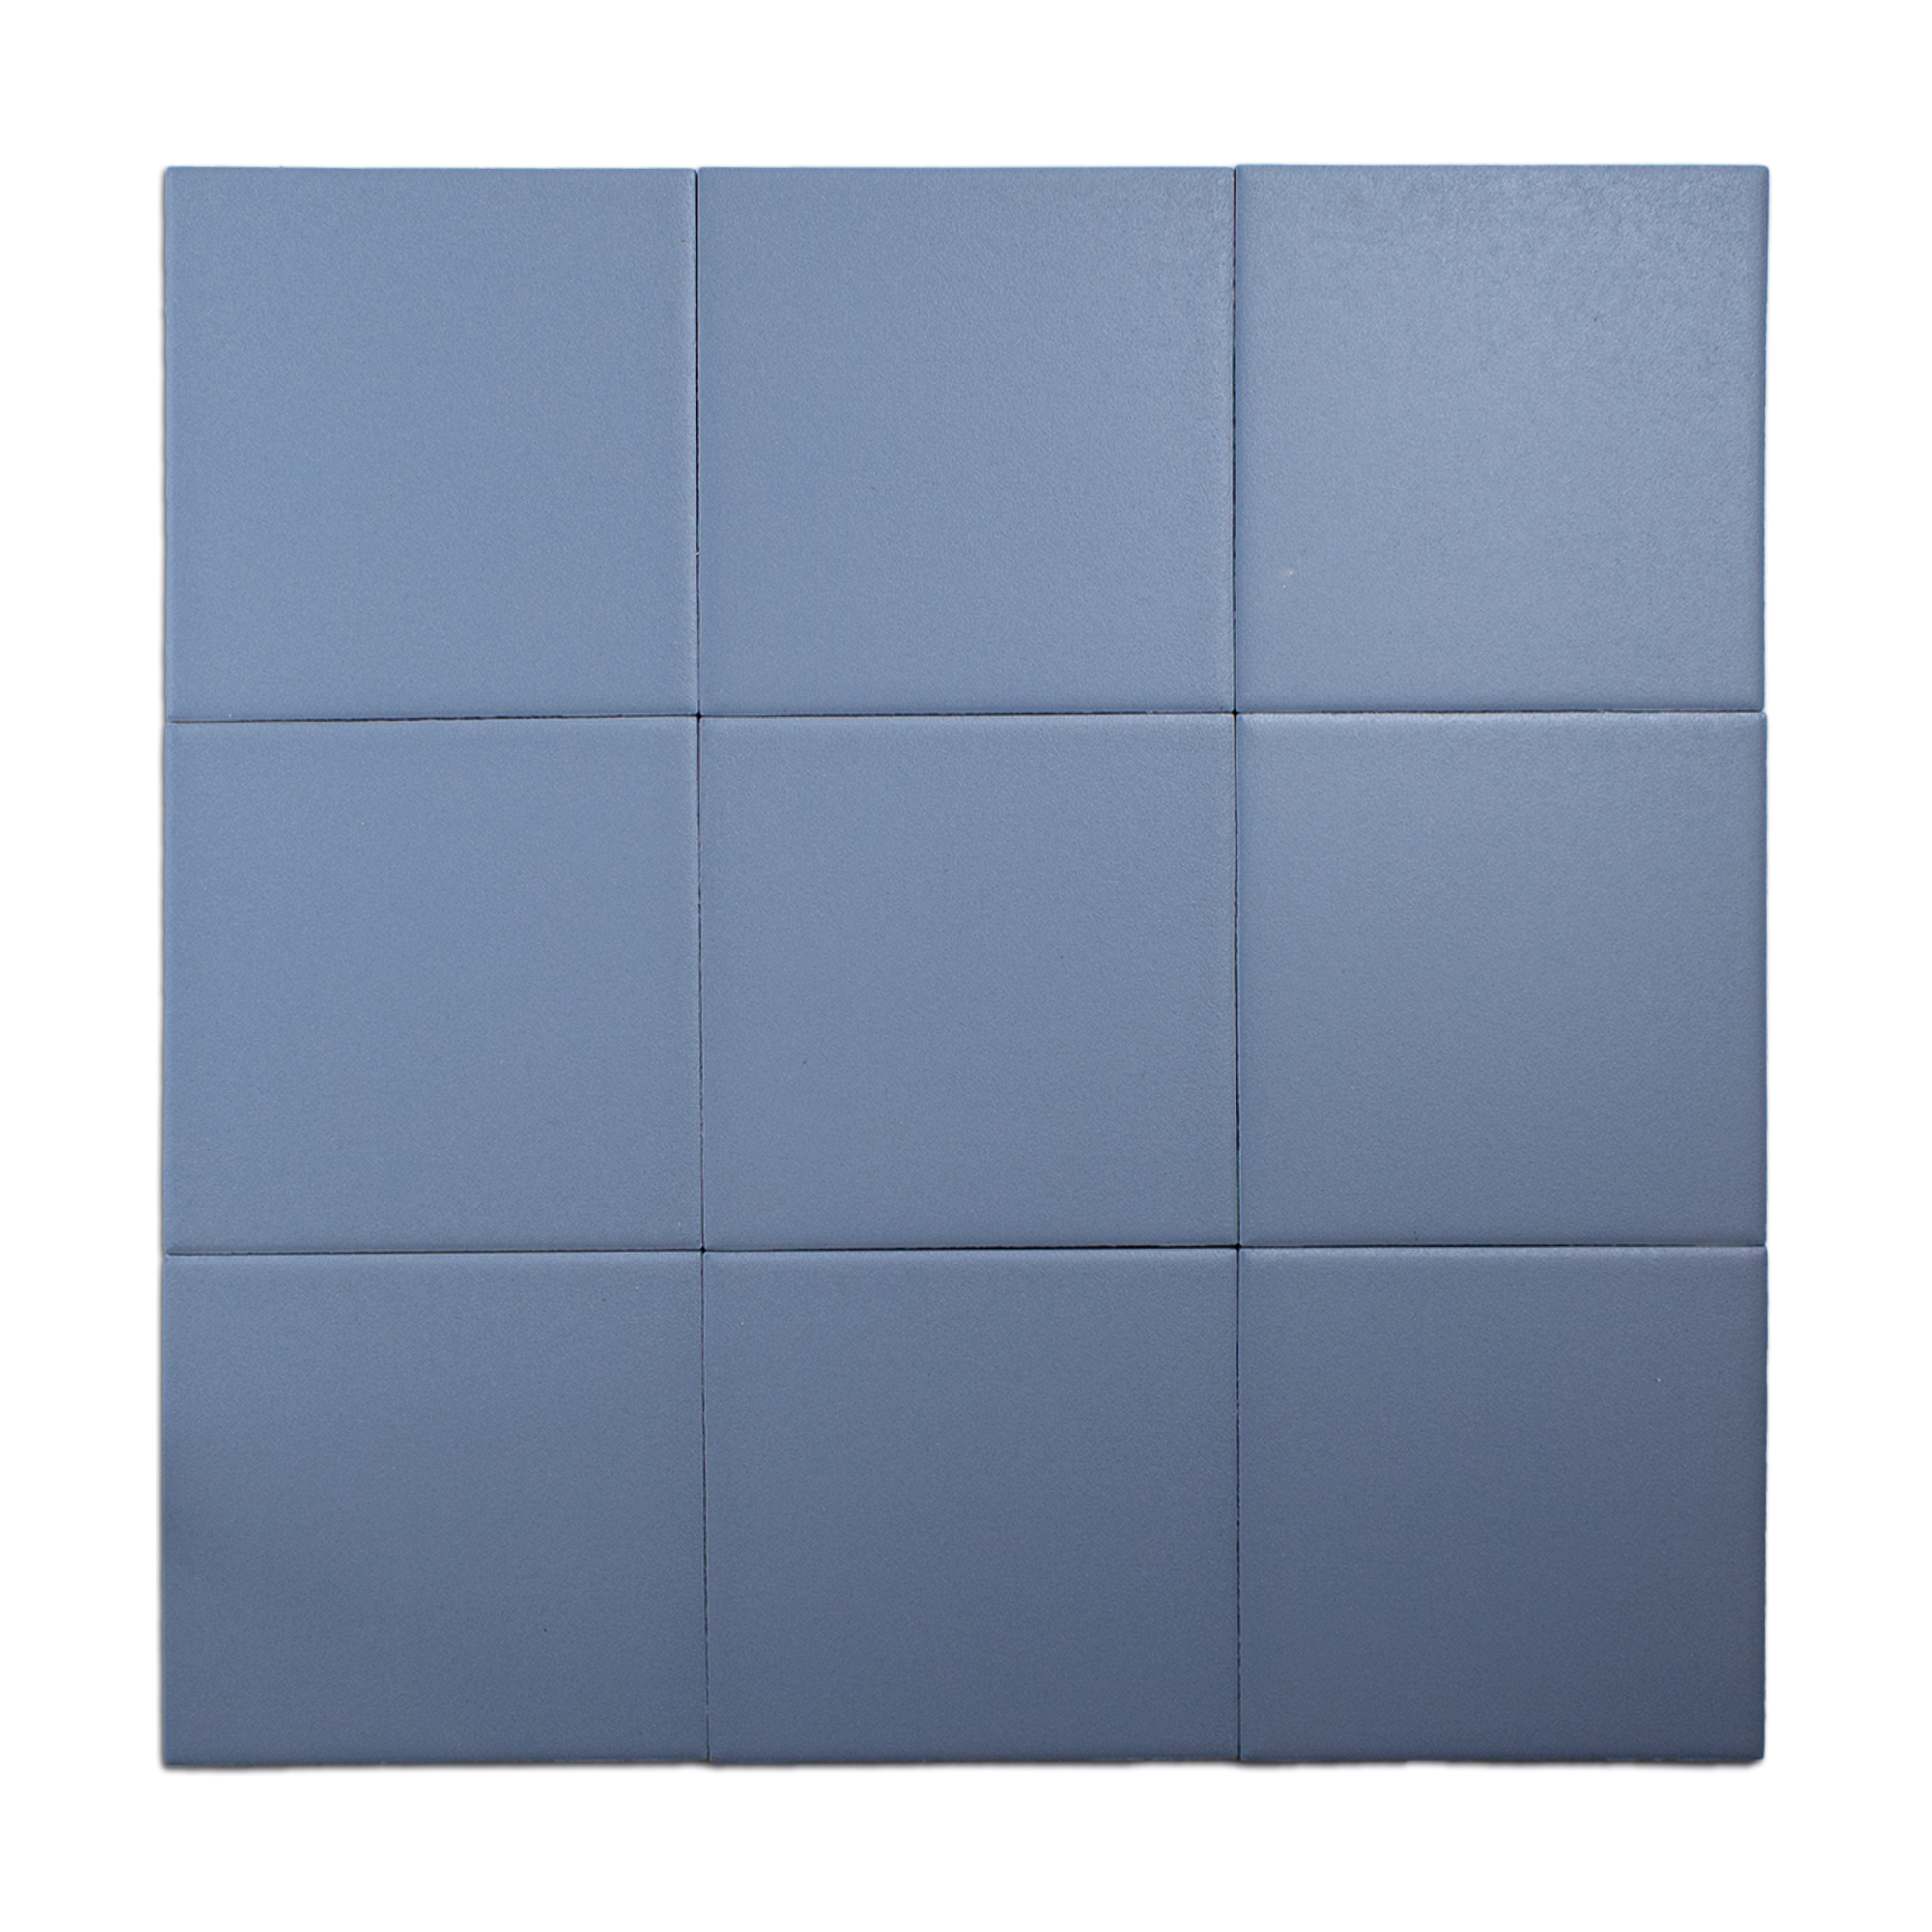 Trucco Square Cornflower Blue 5.5x5.5 Full Body Porcelain Tile